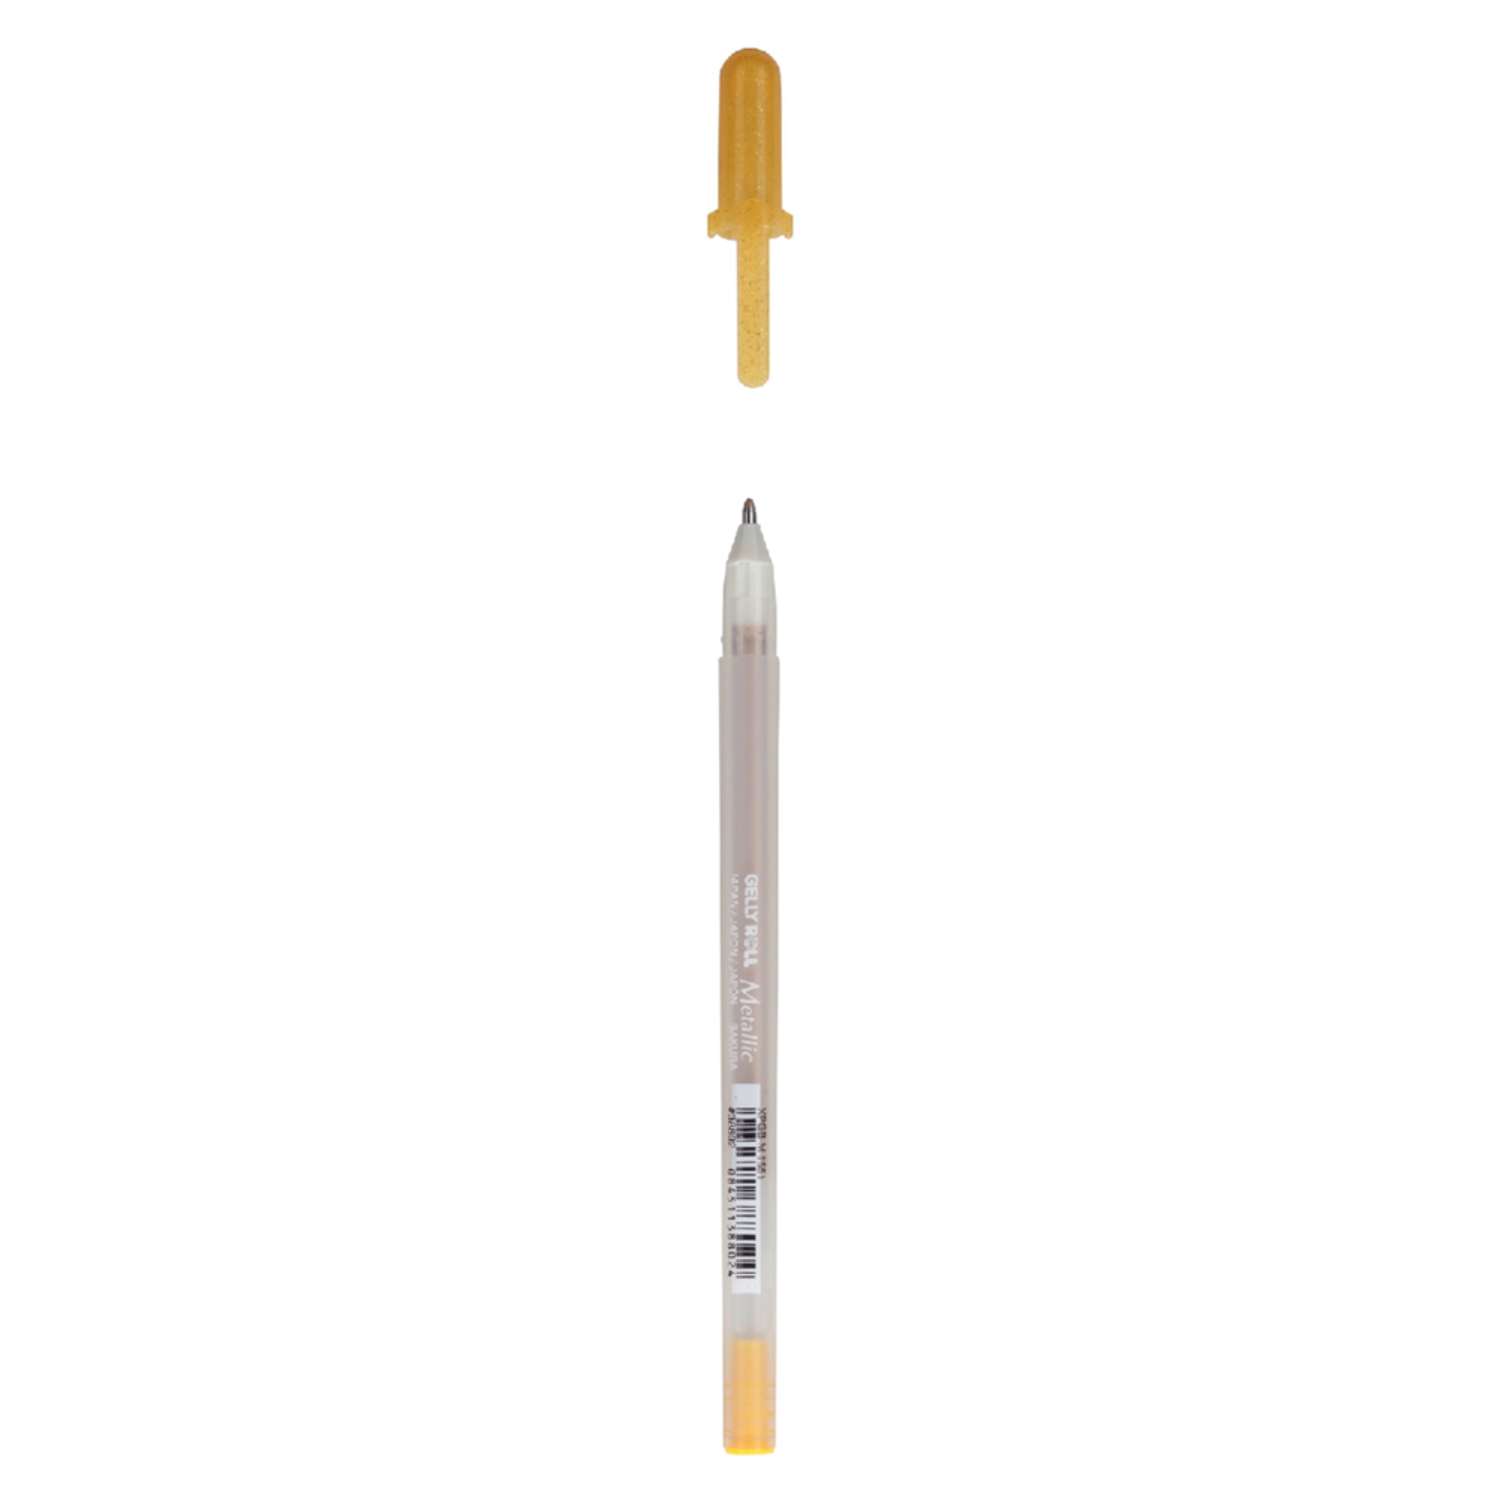 Ручка гелевая Sakura Gelly Roll Metallic цвет чернил: золотой - фото 2